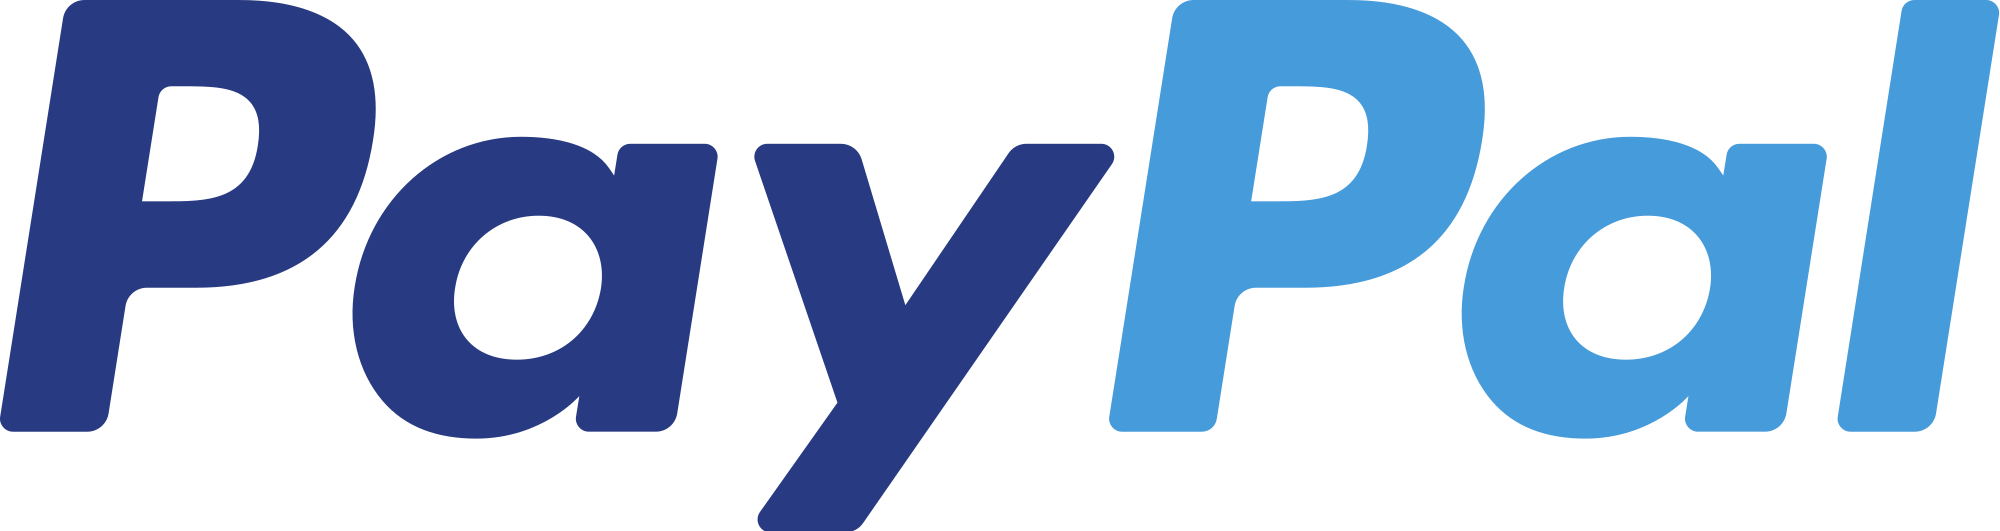 Paypal Logotype PNG - 105231